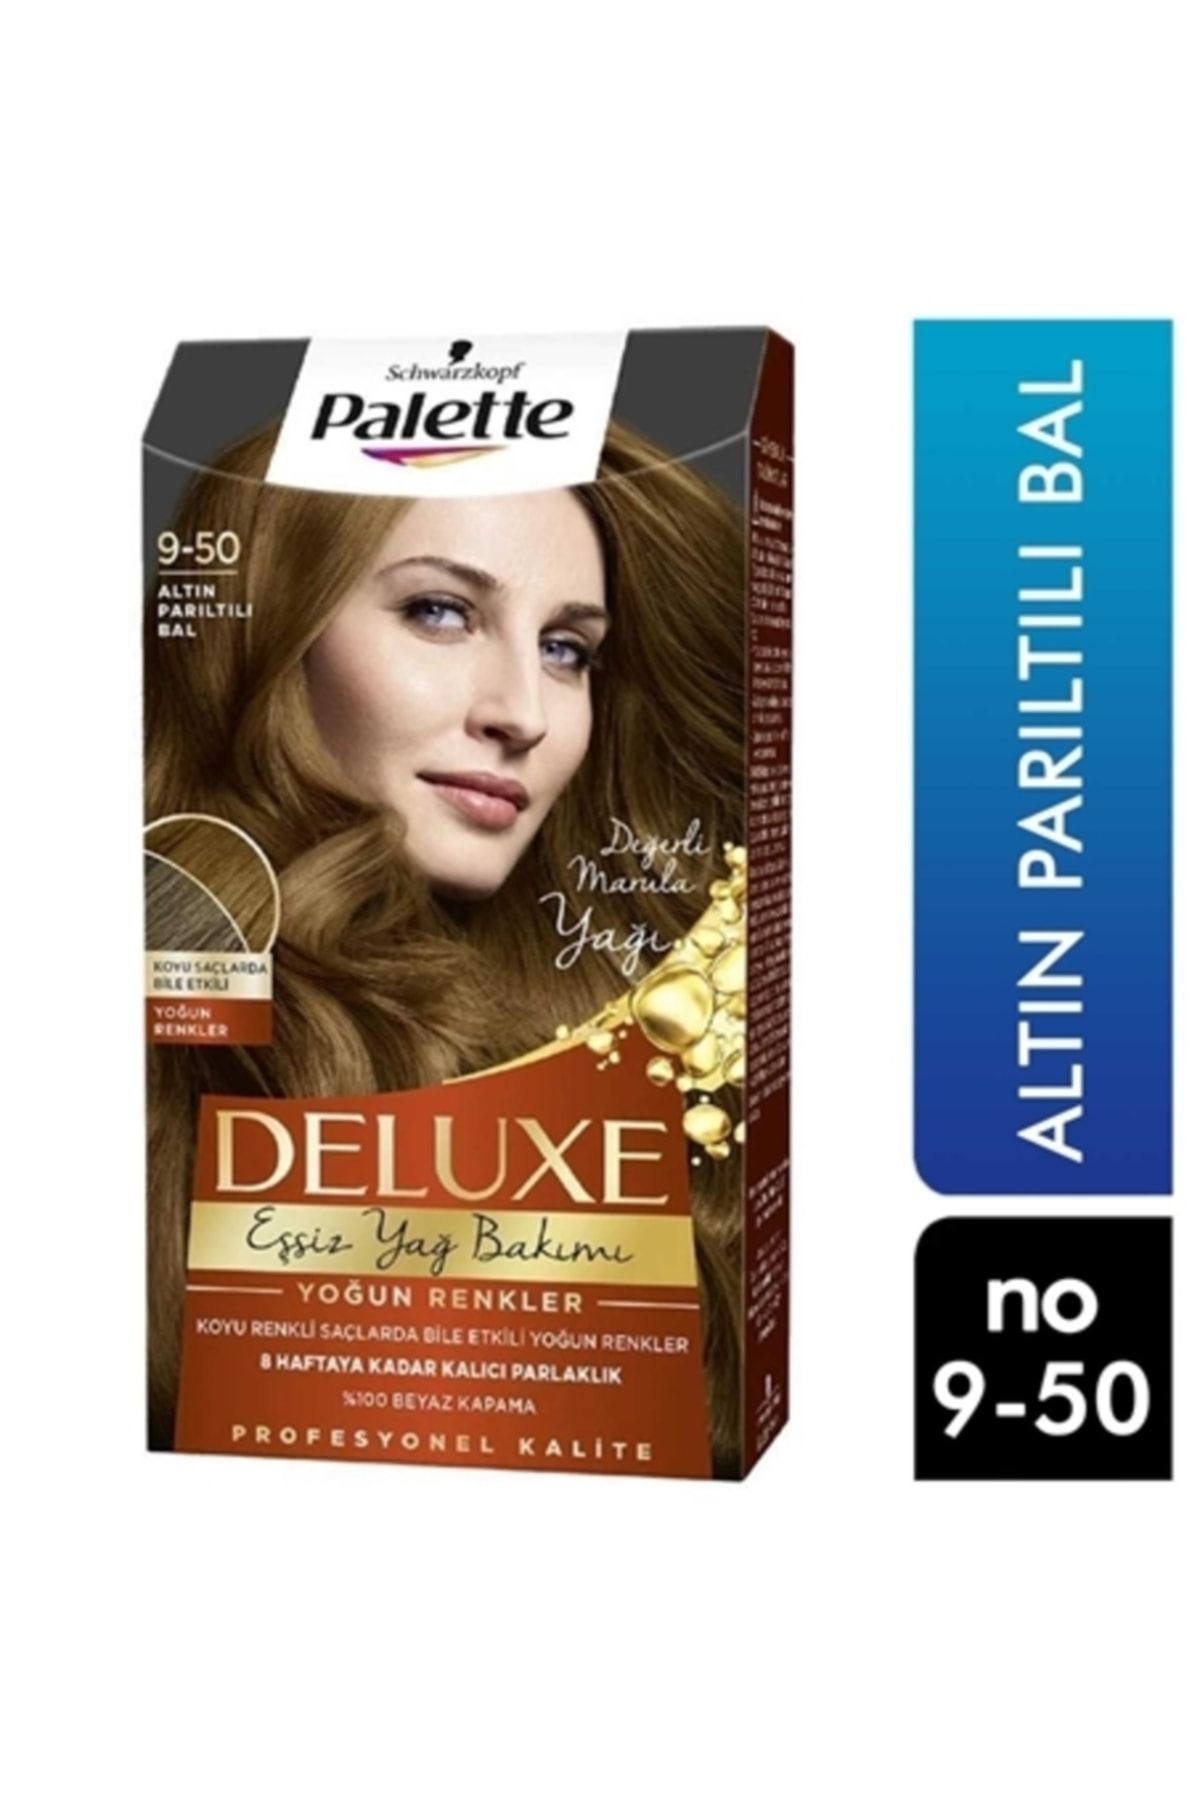 paletta Palette Deluxe Deluxe Yoğun Renkler 9-50 Altın Parıltılı Bal